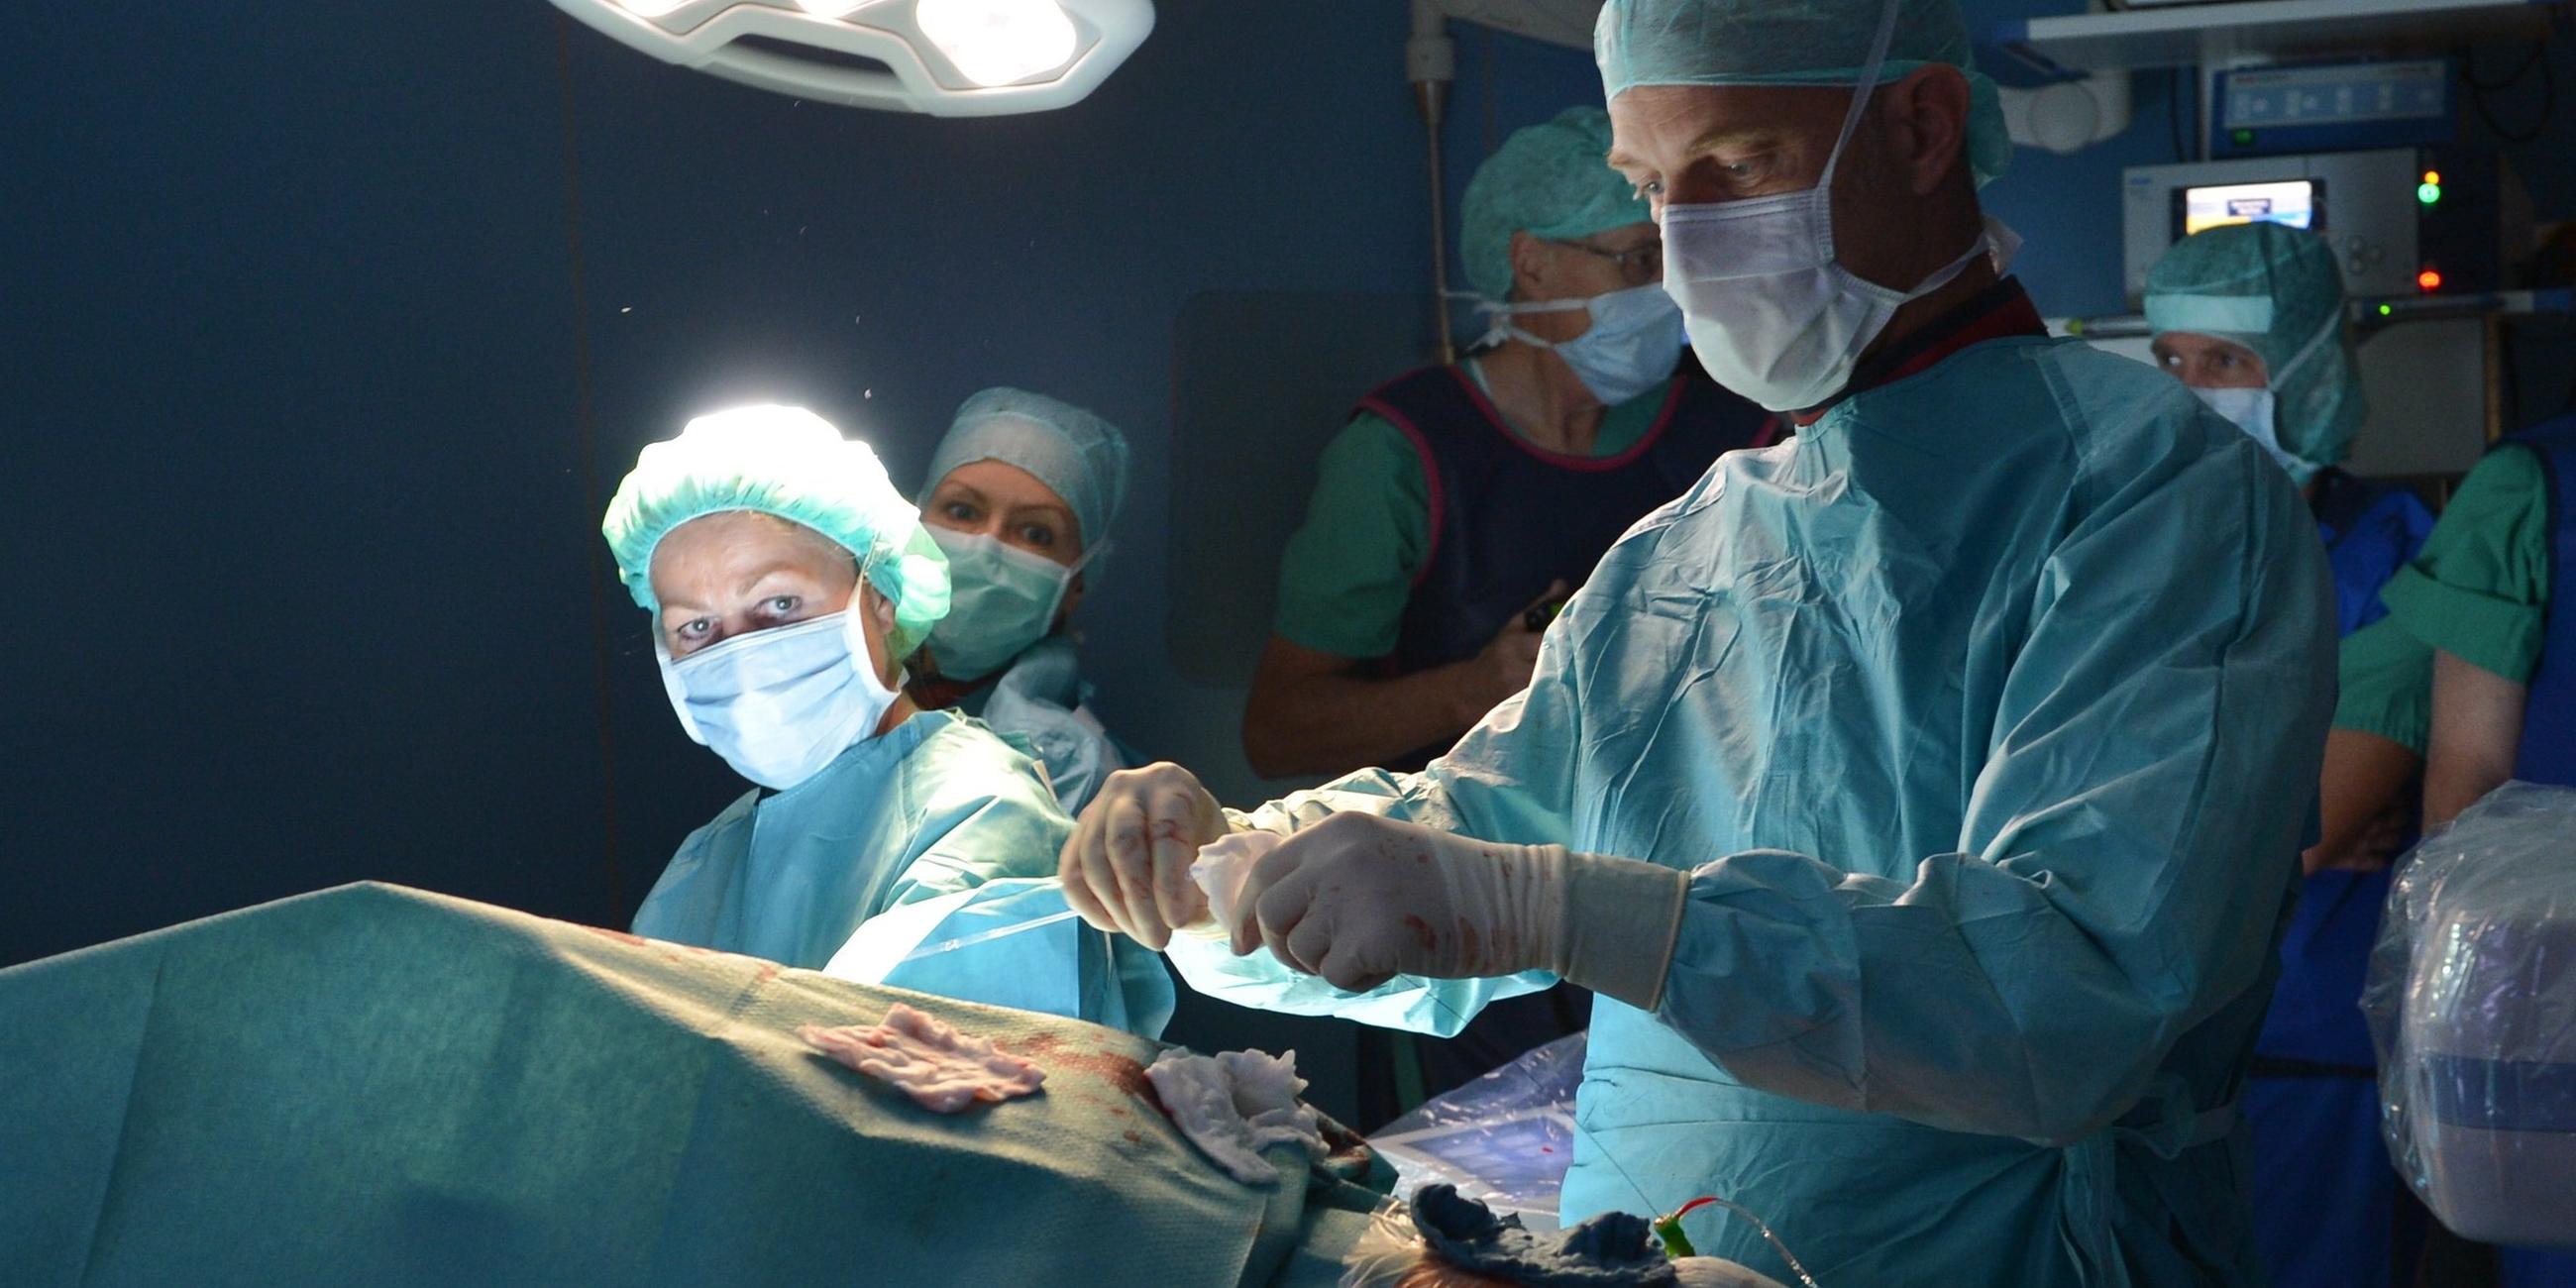 Ein Chirurg führt eine Operation durch. (Symbolbild)